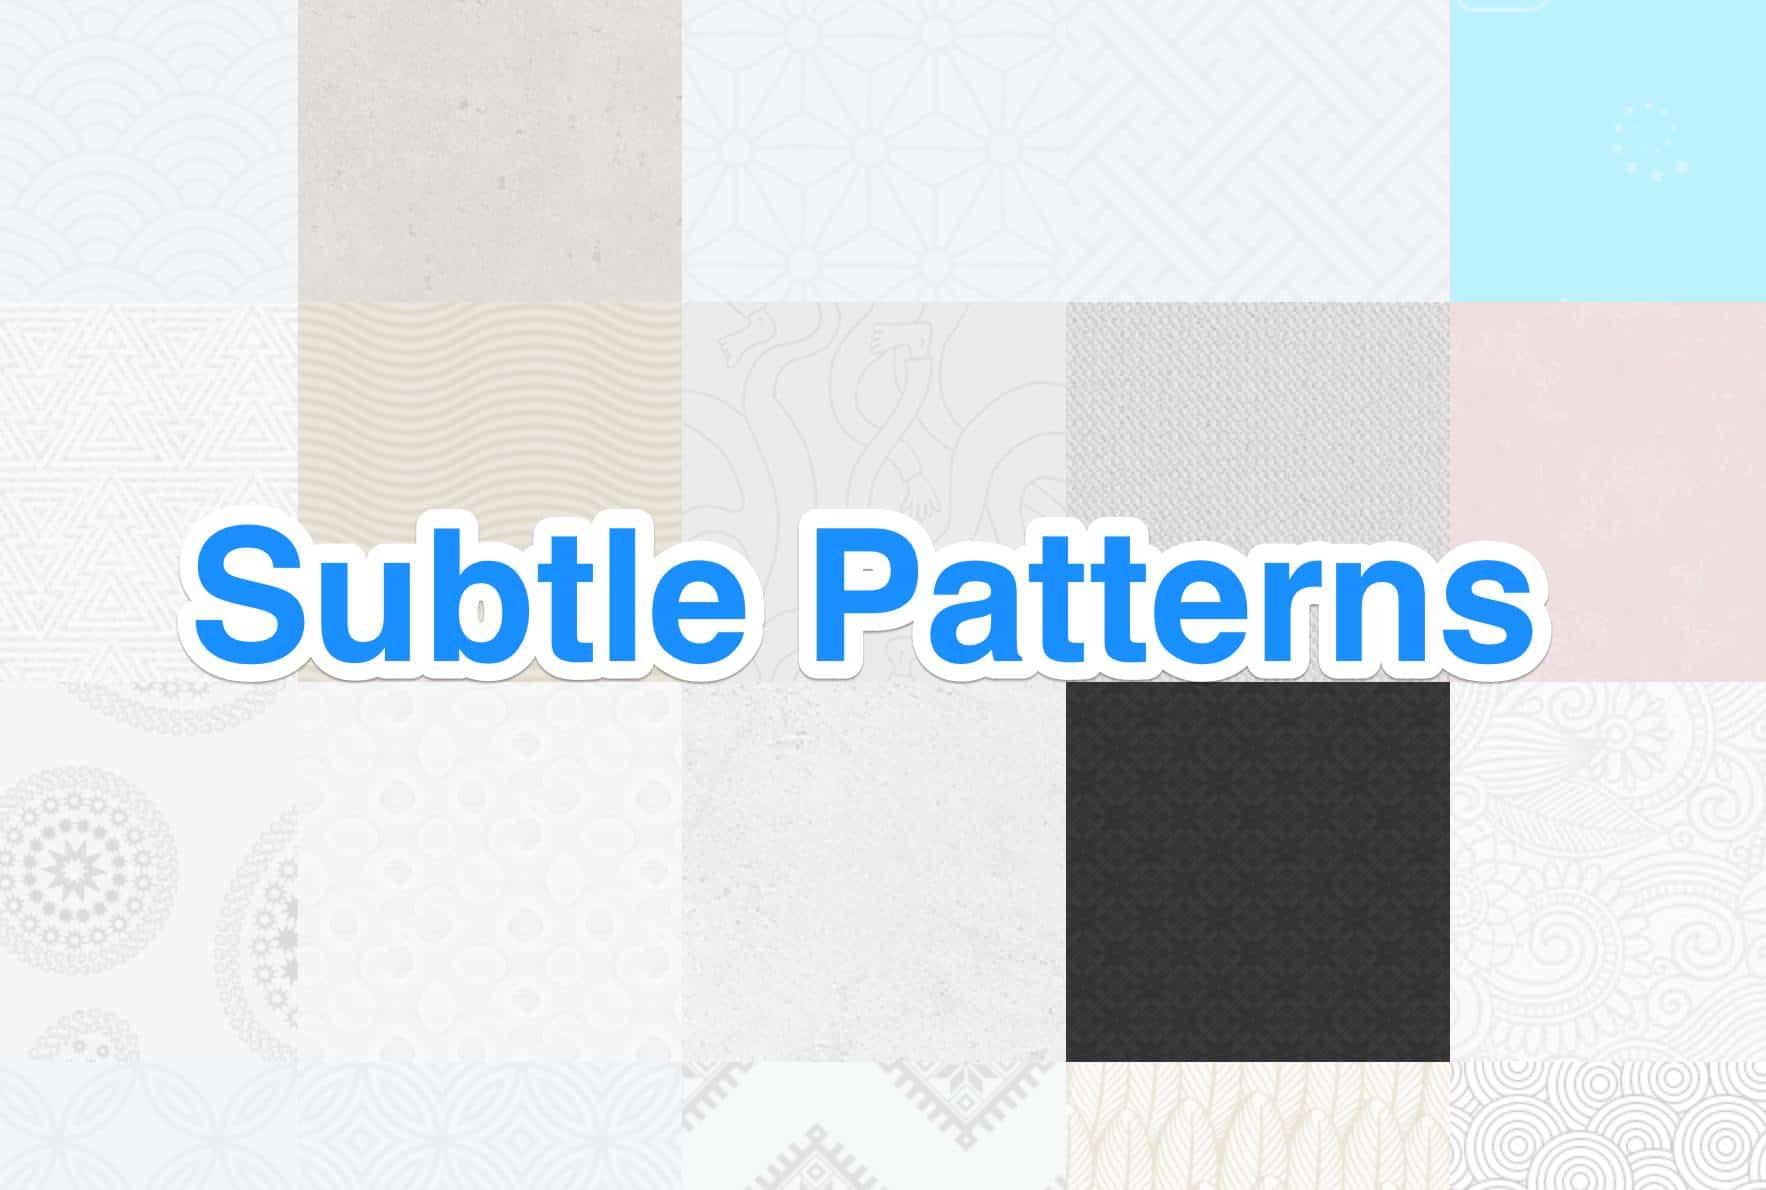 Subtle Patterns